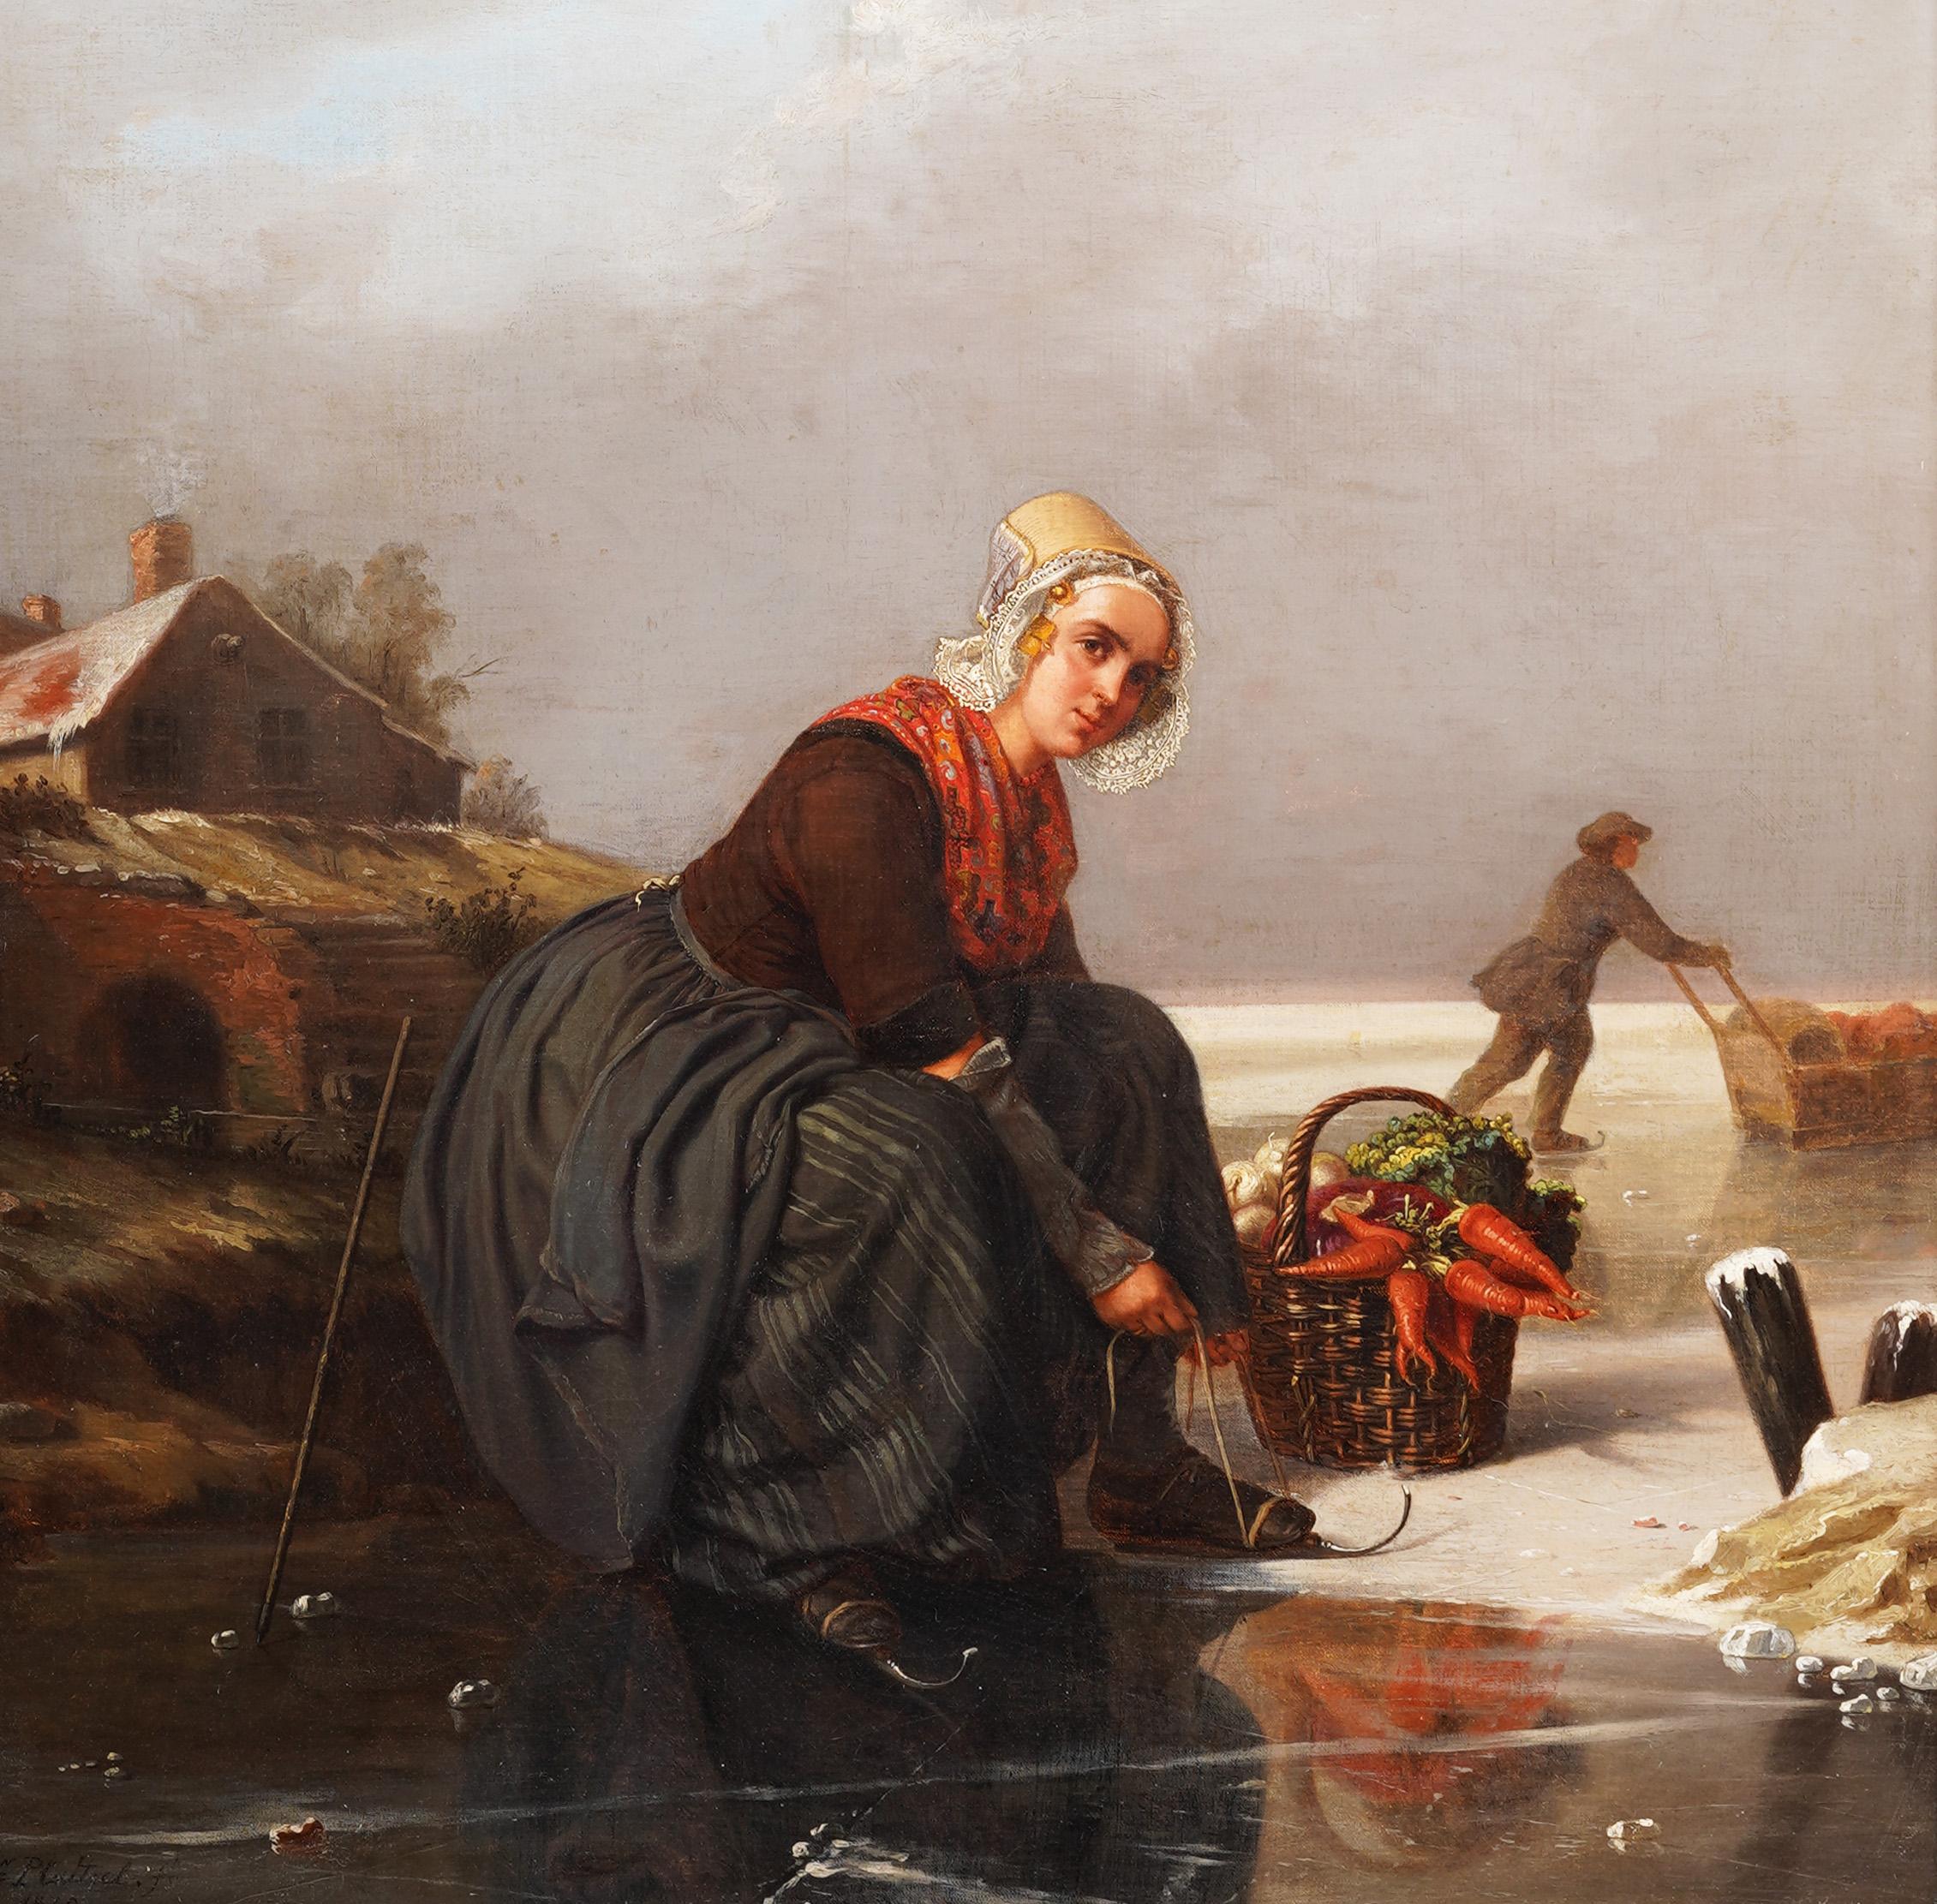 Ein kraftvolles Landschafts- und Porträtgemälde des 19. Jahrhunderts.  Eine junge Holländerin schnürt ihre Schlittschuhe.  Wirklich selten und gut bemalt.  Öl auf Leinwand, auf Karton aufgezogen.  Untergebracht in einem schönen Rahmen aus